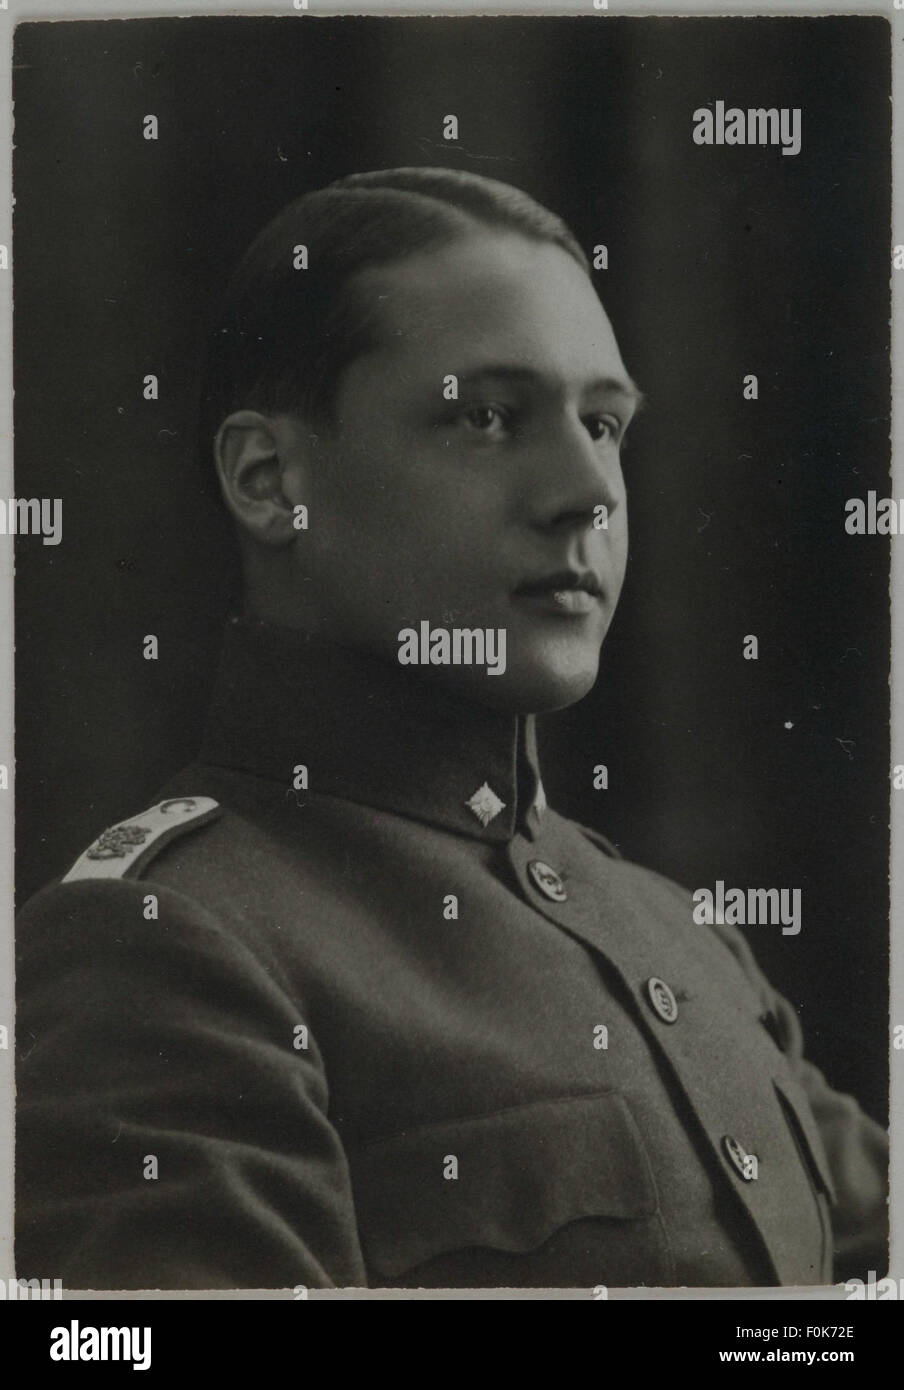 Portrait of Jorma Gallen-Kallela after the Finnish Civil War, 1918. Portrait of Jorma Gallen-Kallela after the Finnish Civil War, 1918 Stock Photo